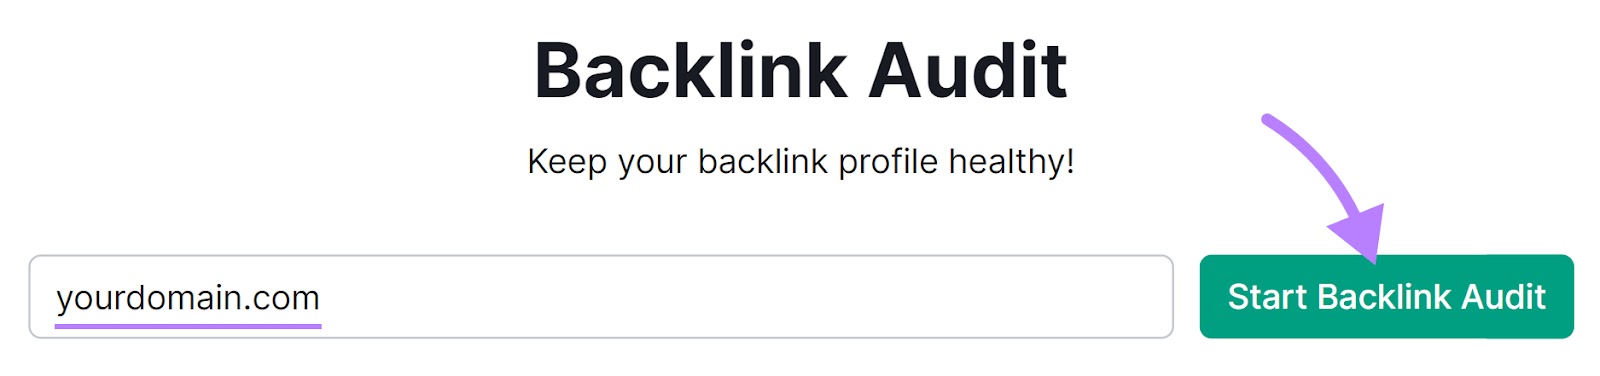 Backlink Audit instrumentality   hunt  bar